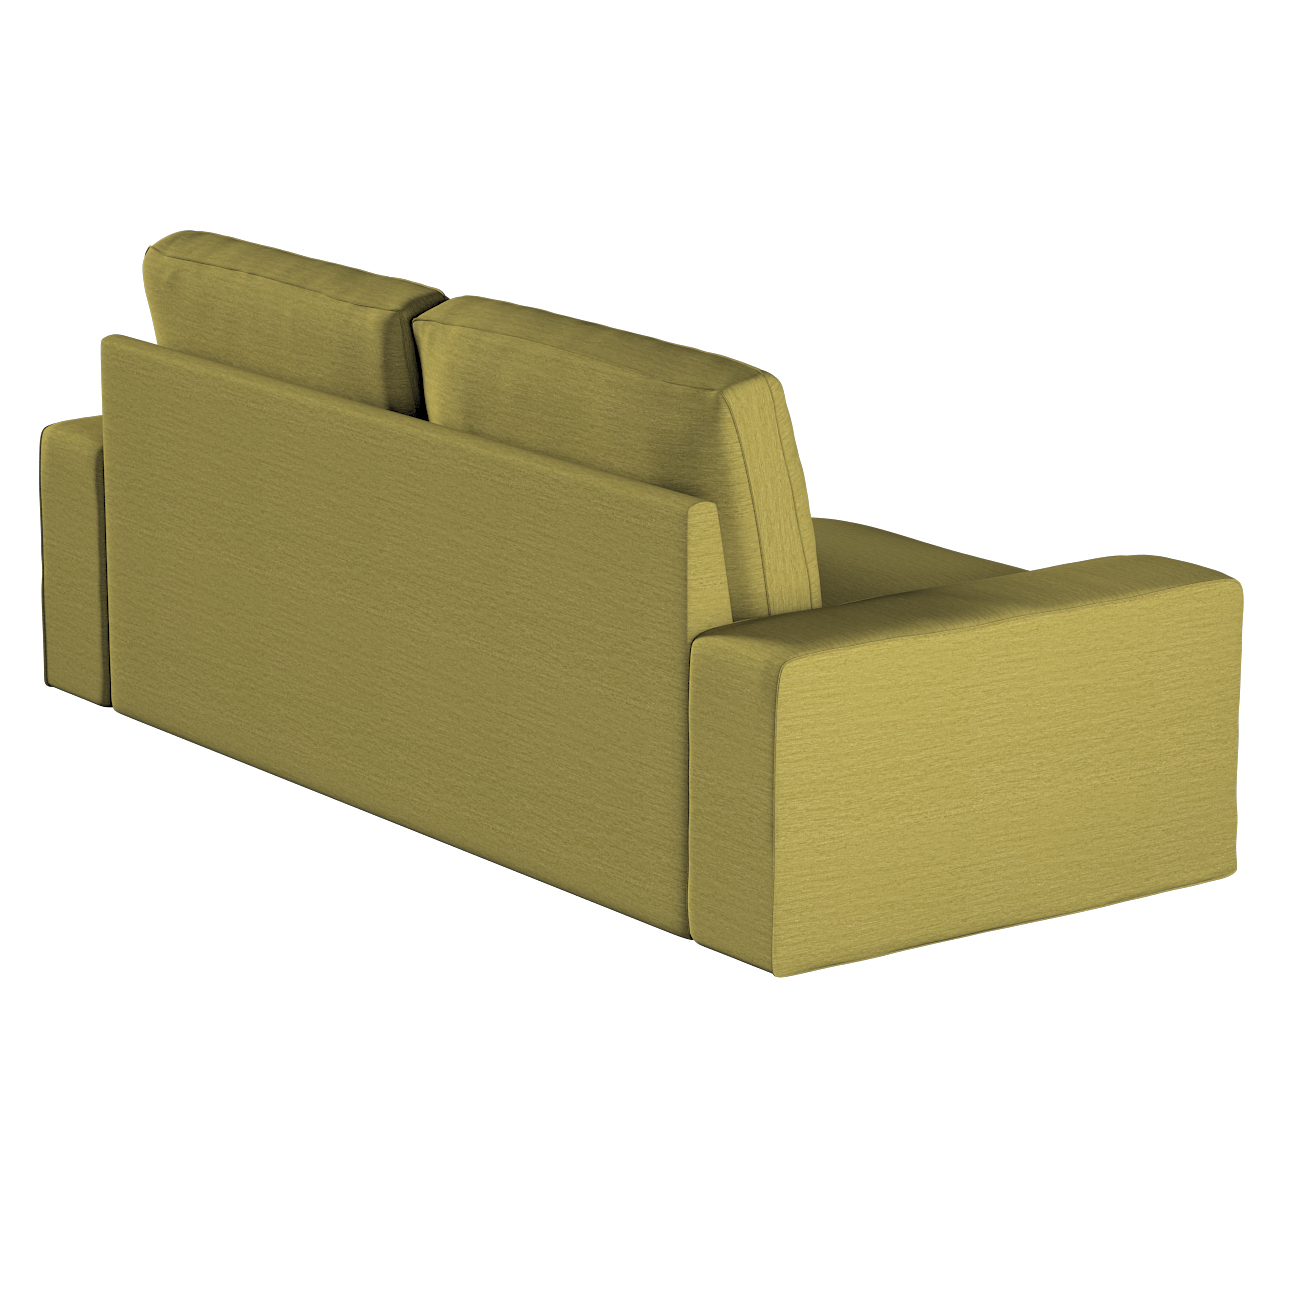 Bezug für Kivik 3-Sitzer Sofa, grün, Bezug für Sofa Kivik 3-Sitzer, Chenill günstig online kaufen